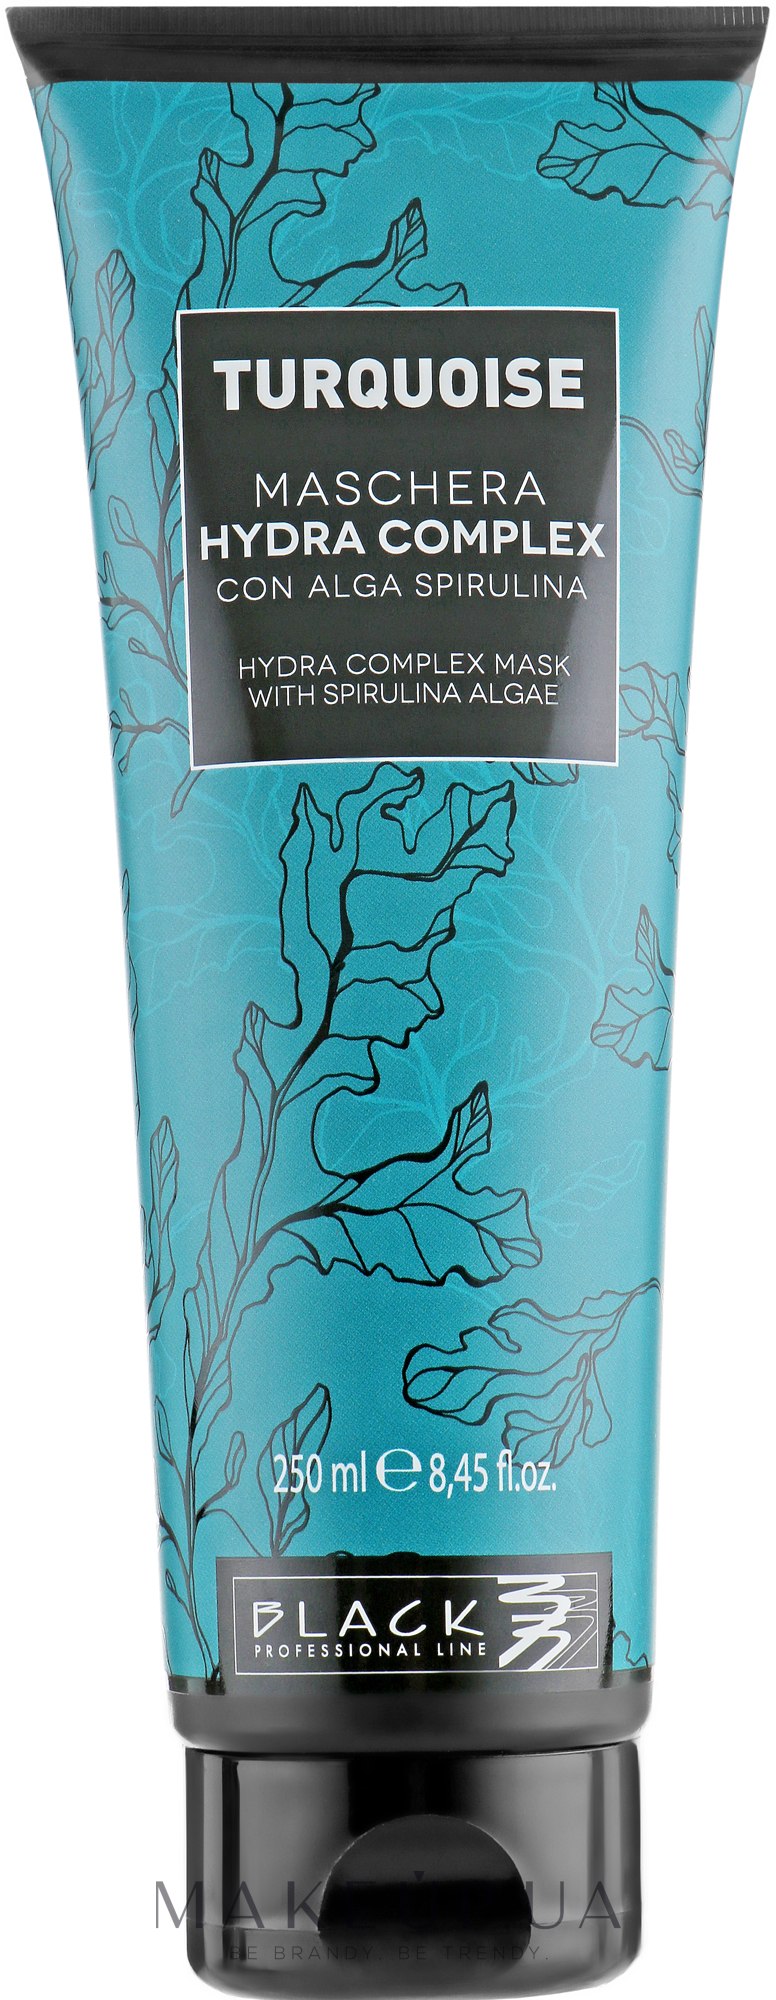 Маска для восстановления волос - Black Professional Line Turquoise Hydra Complex Mask  — фото 250ml